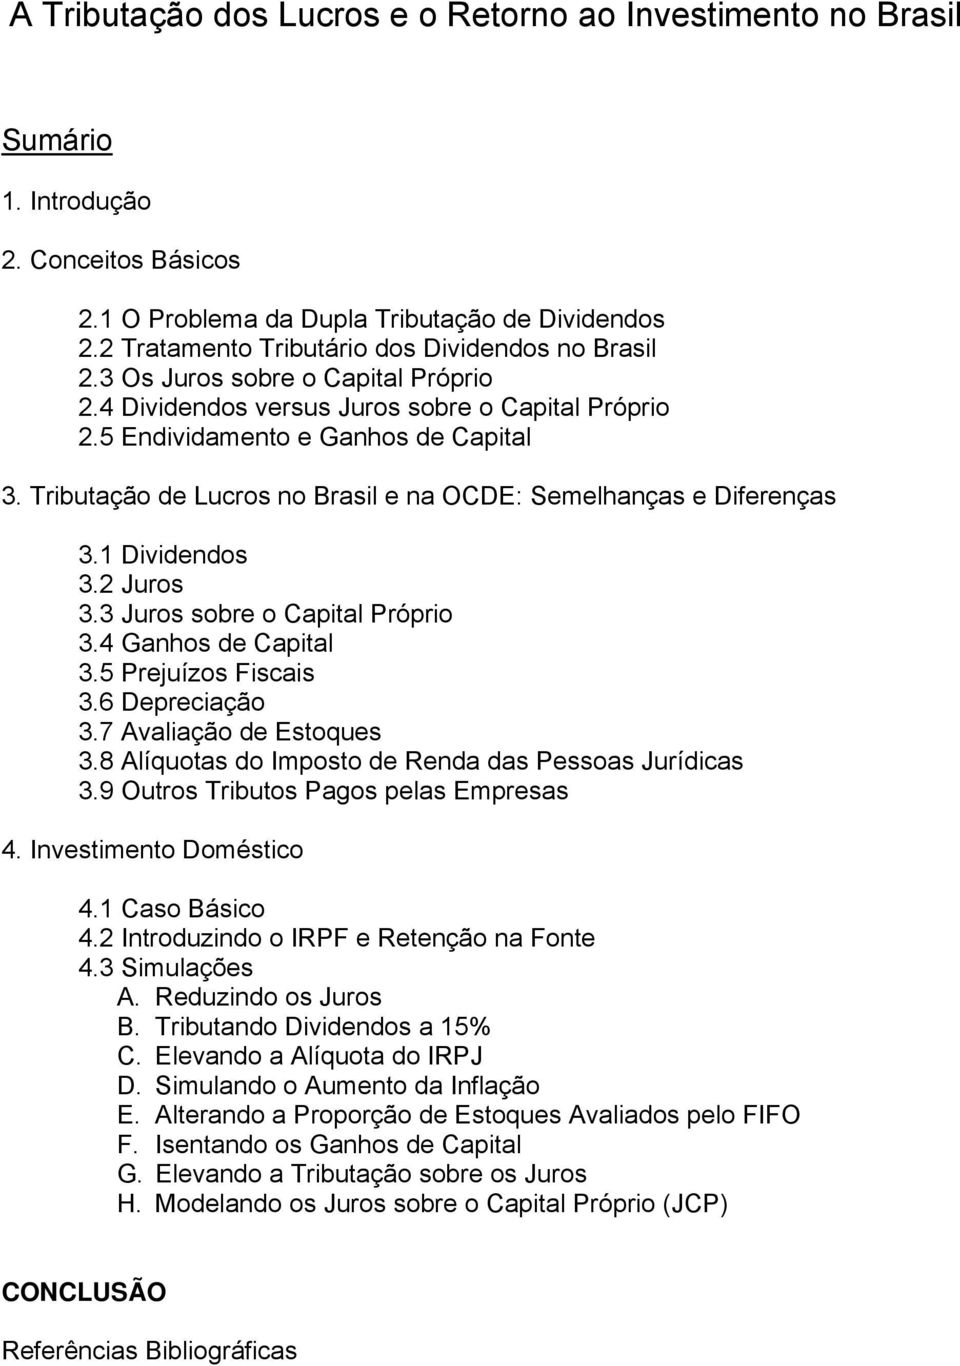 Tributação de Lucros no Brasil e na OCDE: Semelhanças e Diferenças 3.1 Dividendos 3.2 Juros 3.3 Juros sobre o Capital Próprio 3.4 Ganhos de Capital 3.5 Prejuízos Fiscais 3.6 Depreciação 3.